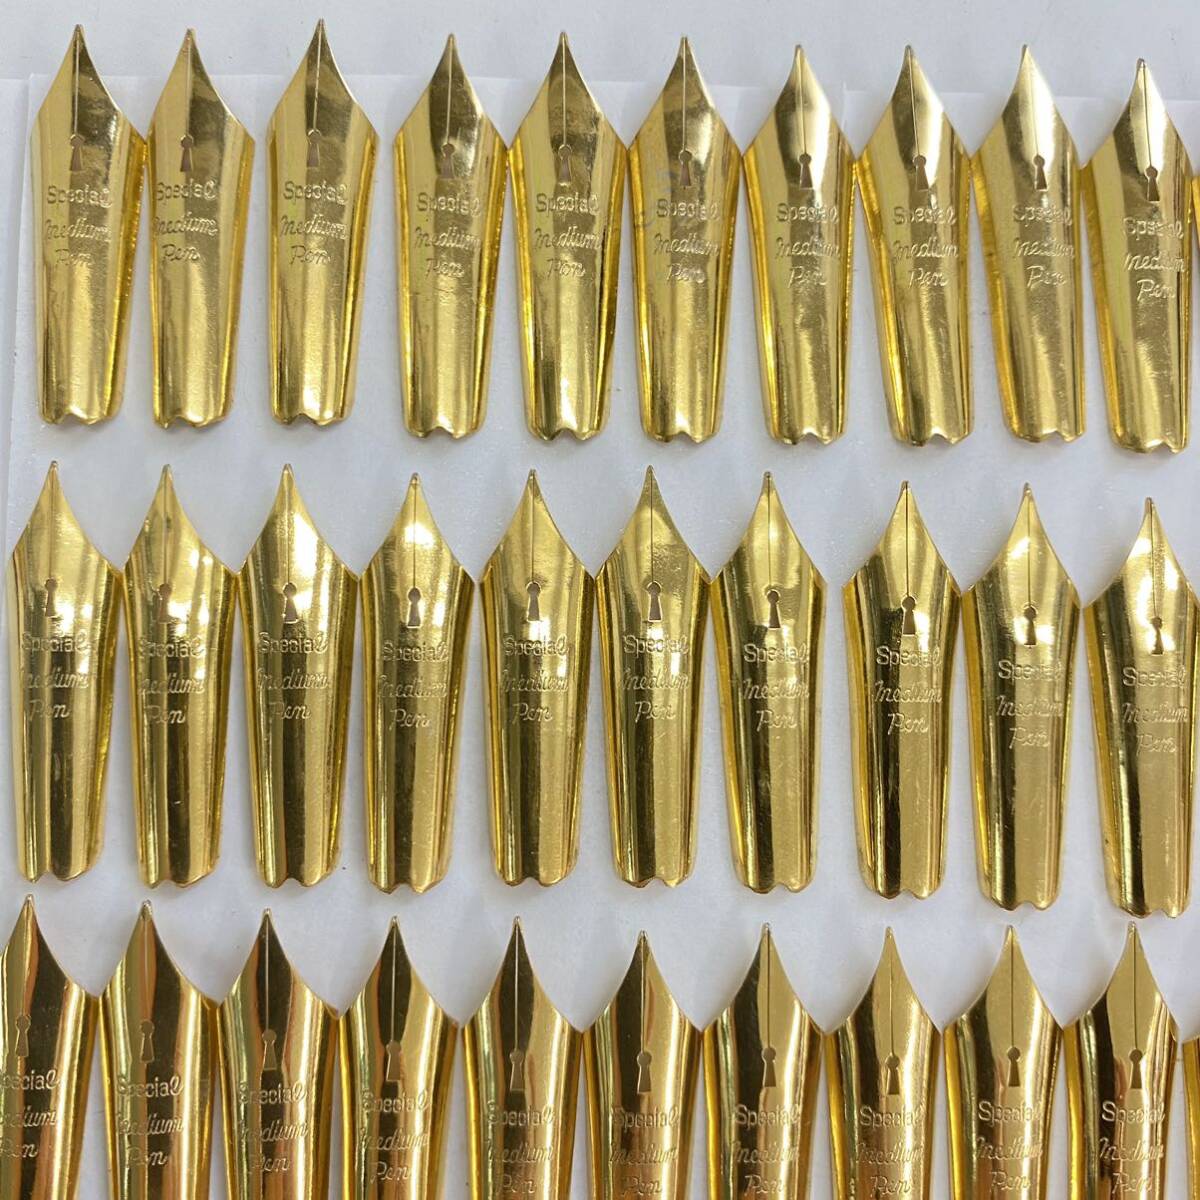 762 未使用 保管品 万年筆 ペン先 特大 SUPECIAL IRIDIUM PEN 鍵穴型 ゴールドカラー 替ペン まとめて 文房具 筆記用具 外装込重量 39g_画像2